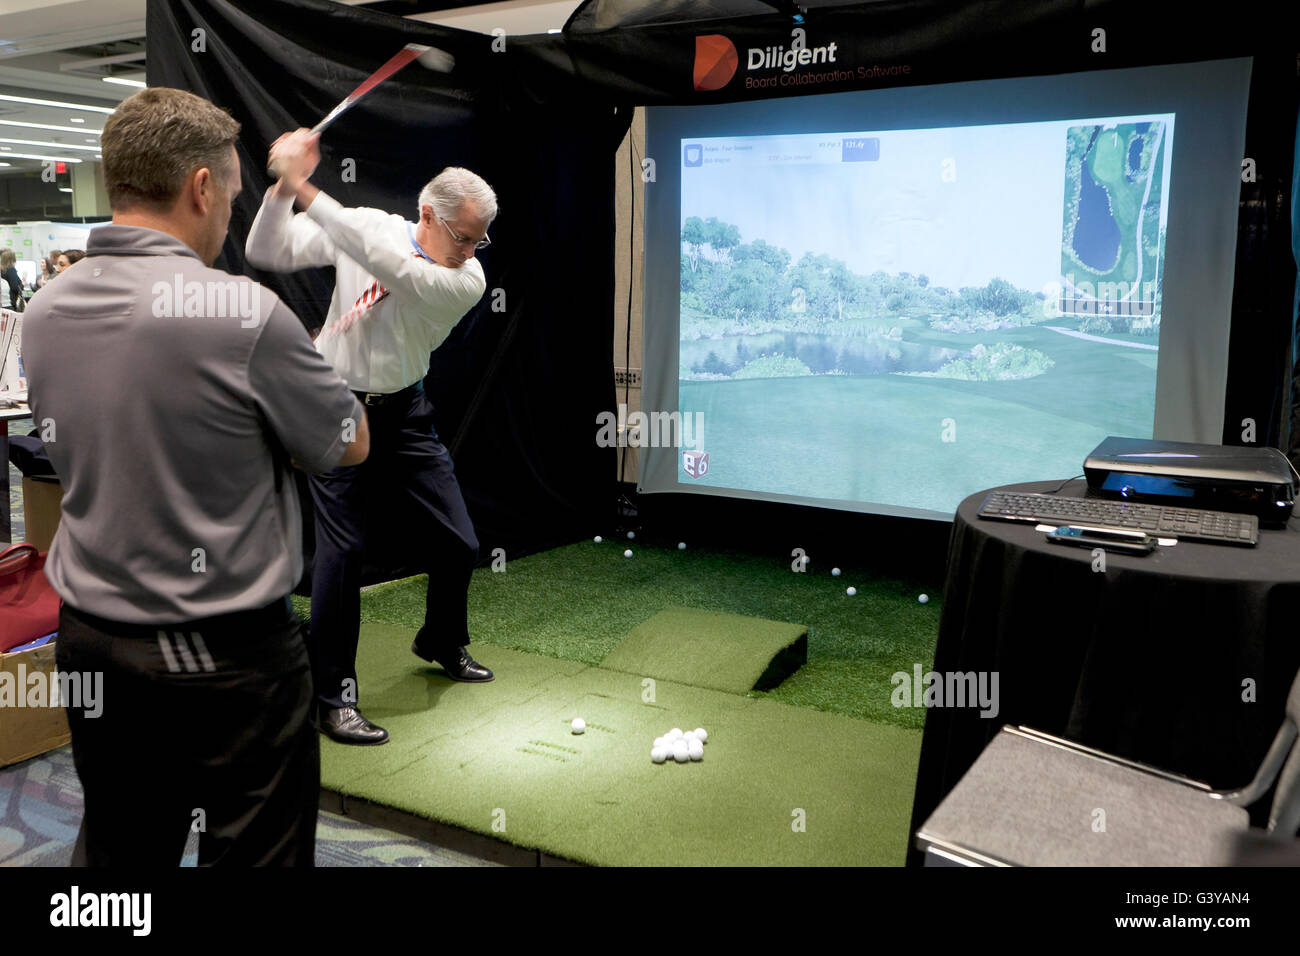 Businessman pris le départ à un simulateur de golf - USA Banque D'Images